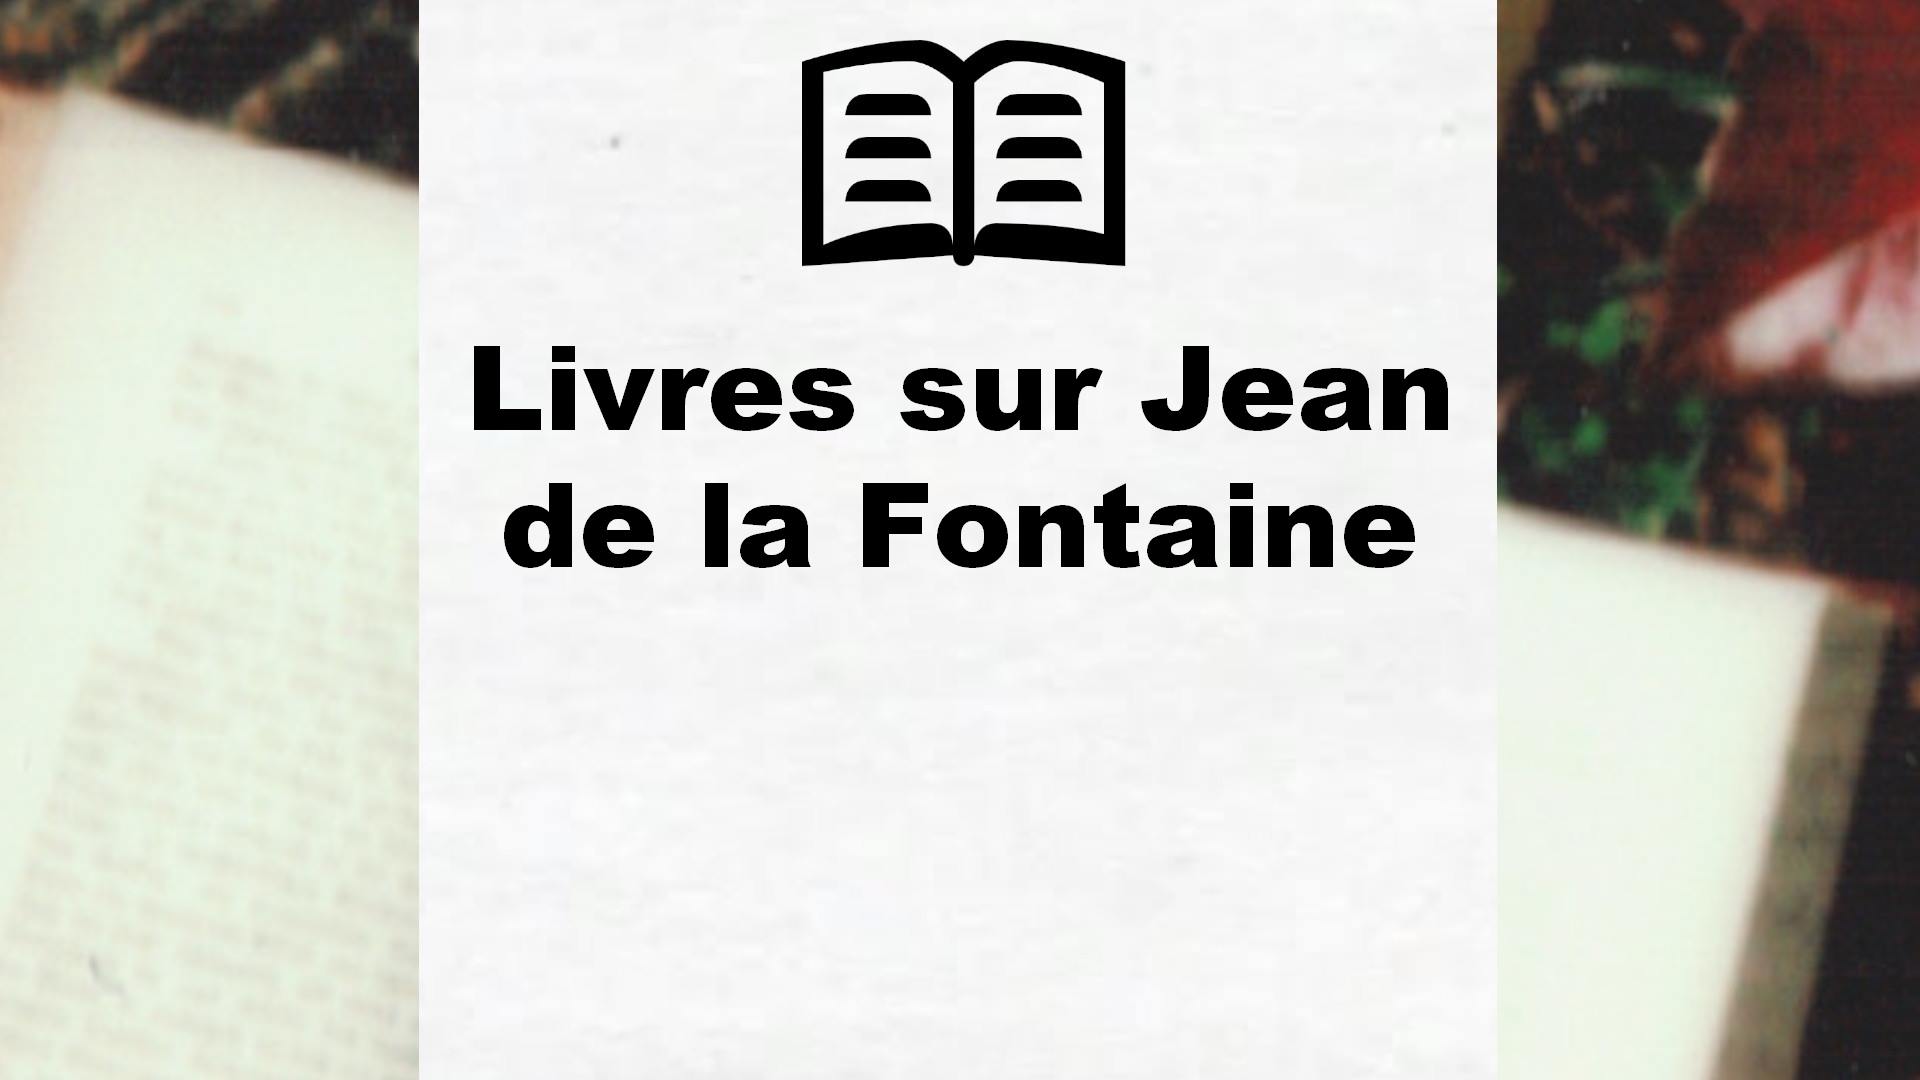 Livres sur Jean de la Fontaine